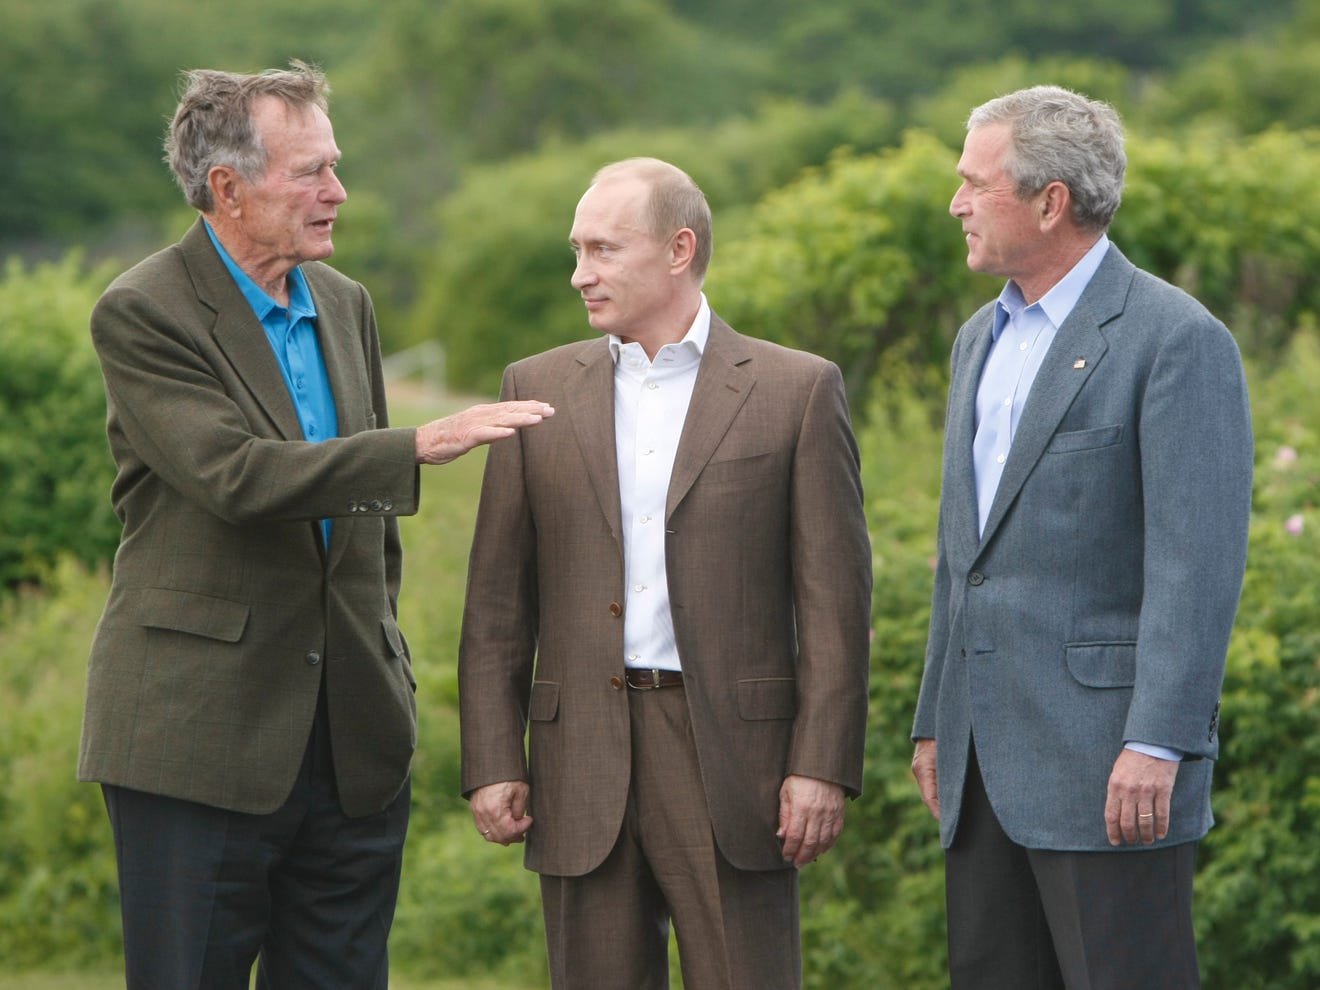 Владимир Путин и Джордж Буш